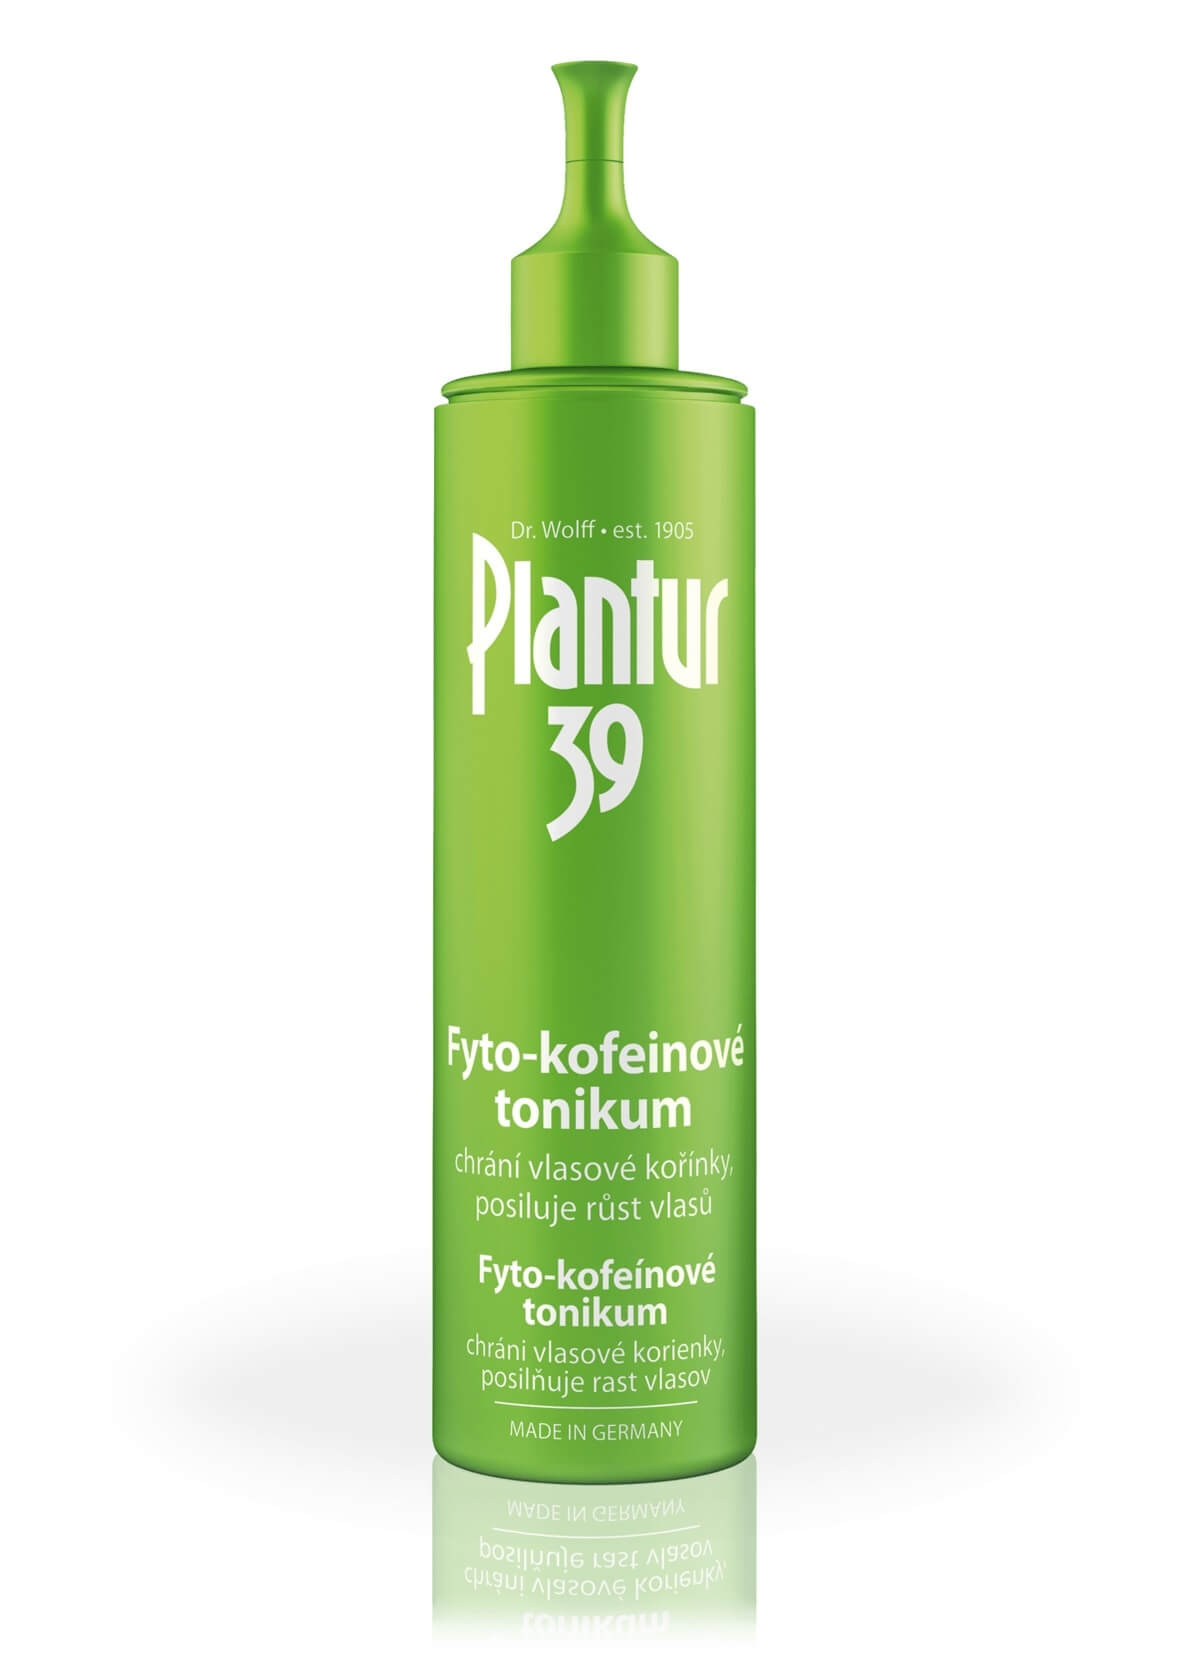 Plantur Fyto-Kofeínové tonikum pre podporu rastu vlasov 200 ml + 2 mesiace na vrátenie tovaru